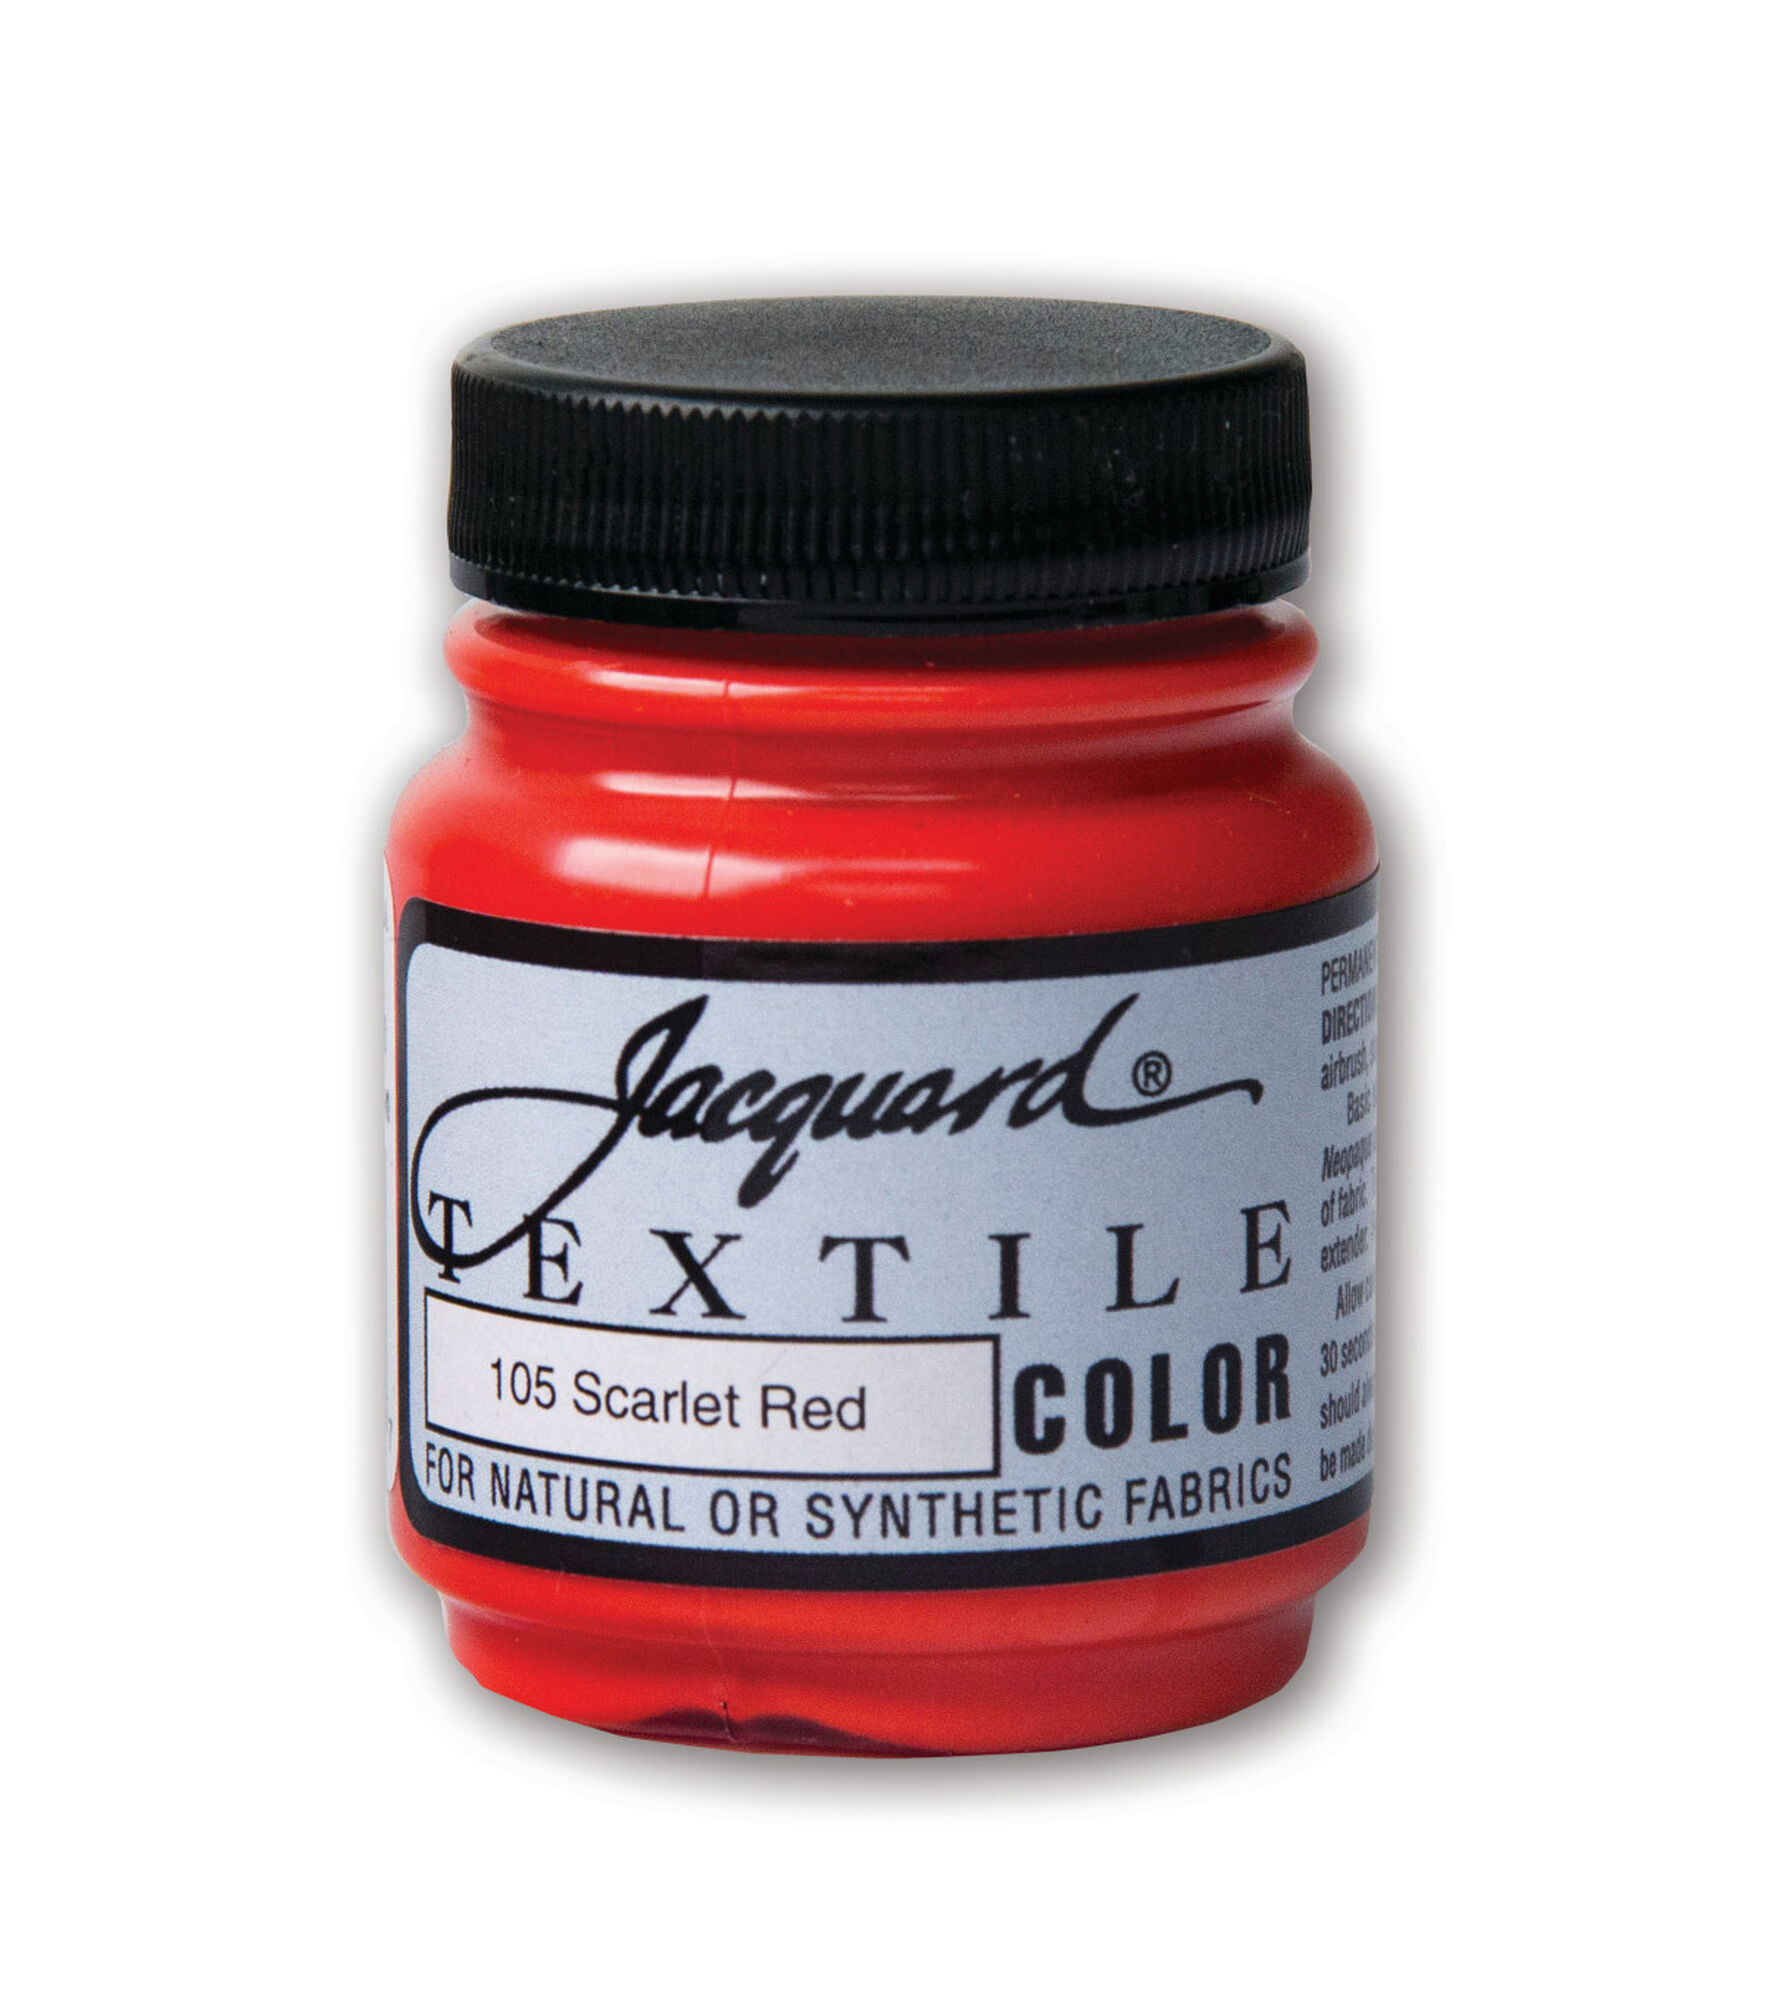 Jacquard Textile Color Fabric Paint 8oz-Mars Red TEXTILE8-2132